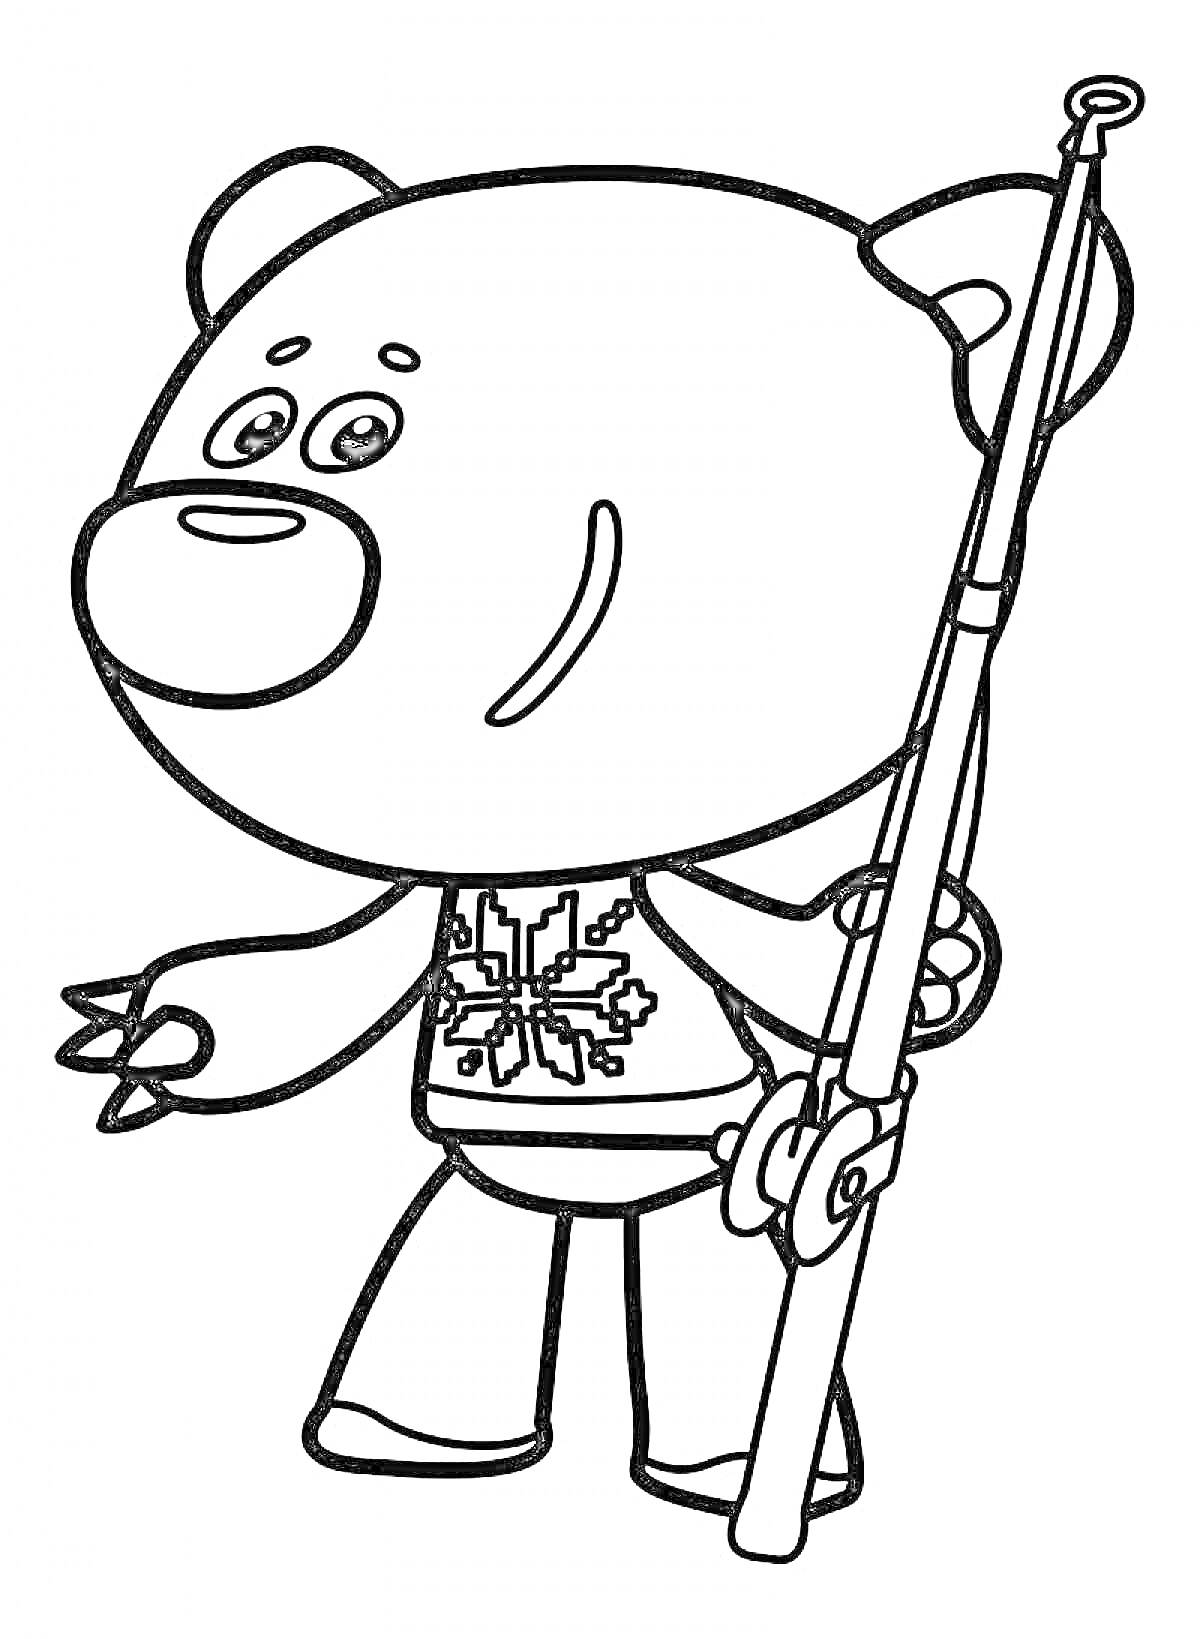 Раскраска Мимимишки - медведь с удочкой и свитером со снежинкой